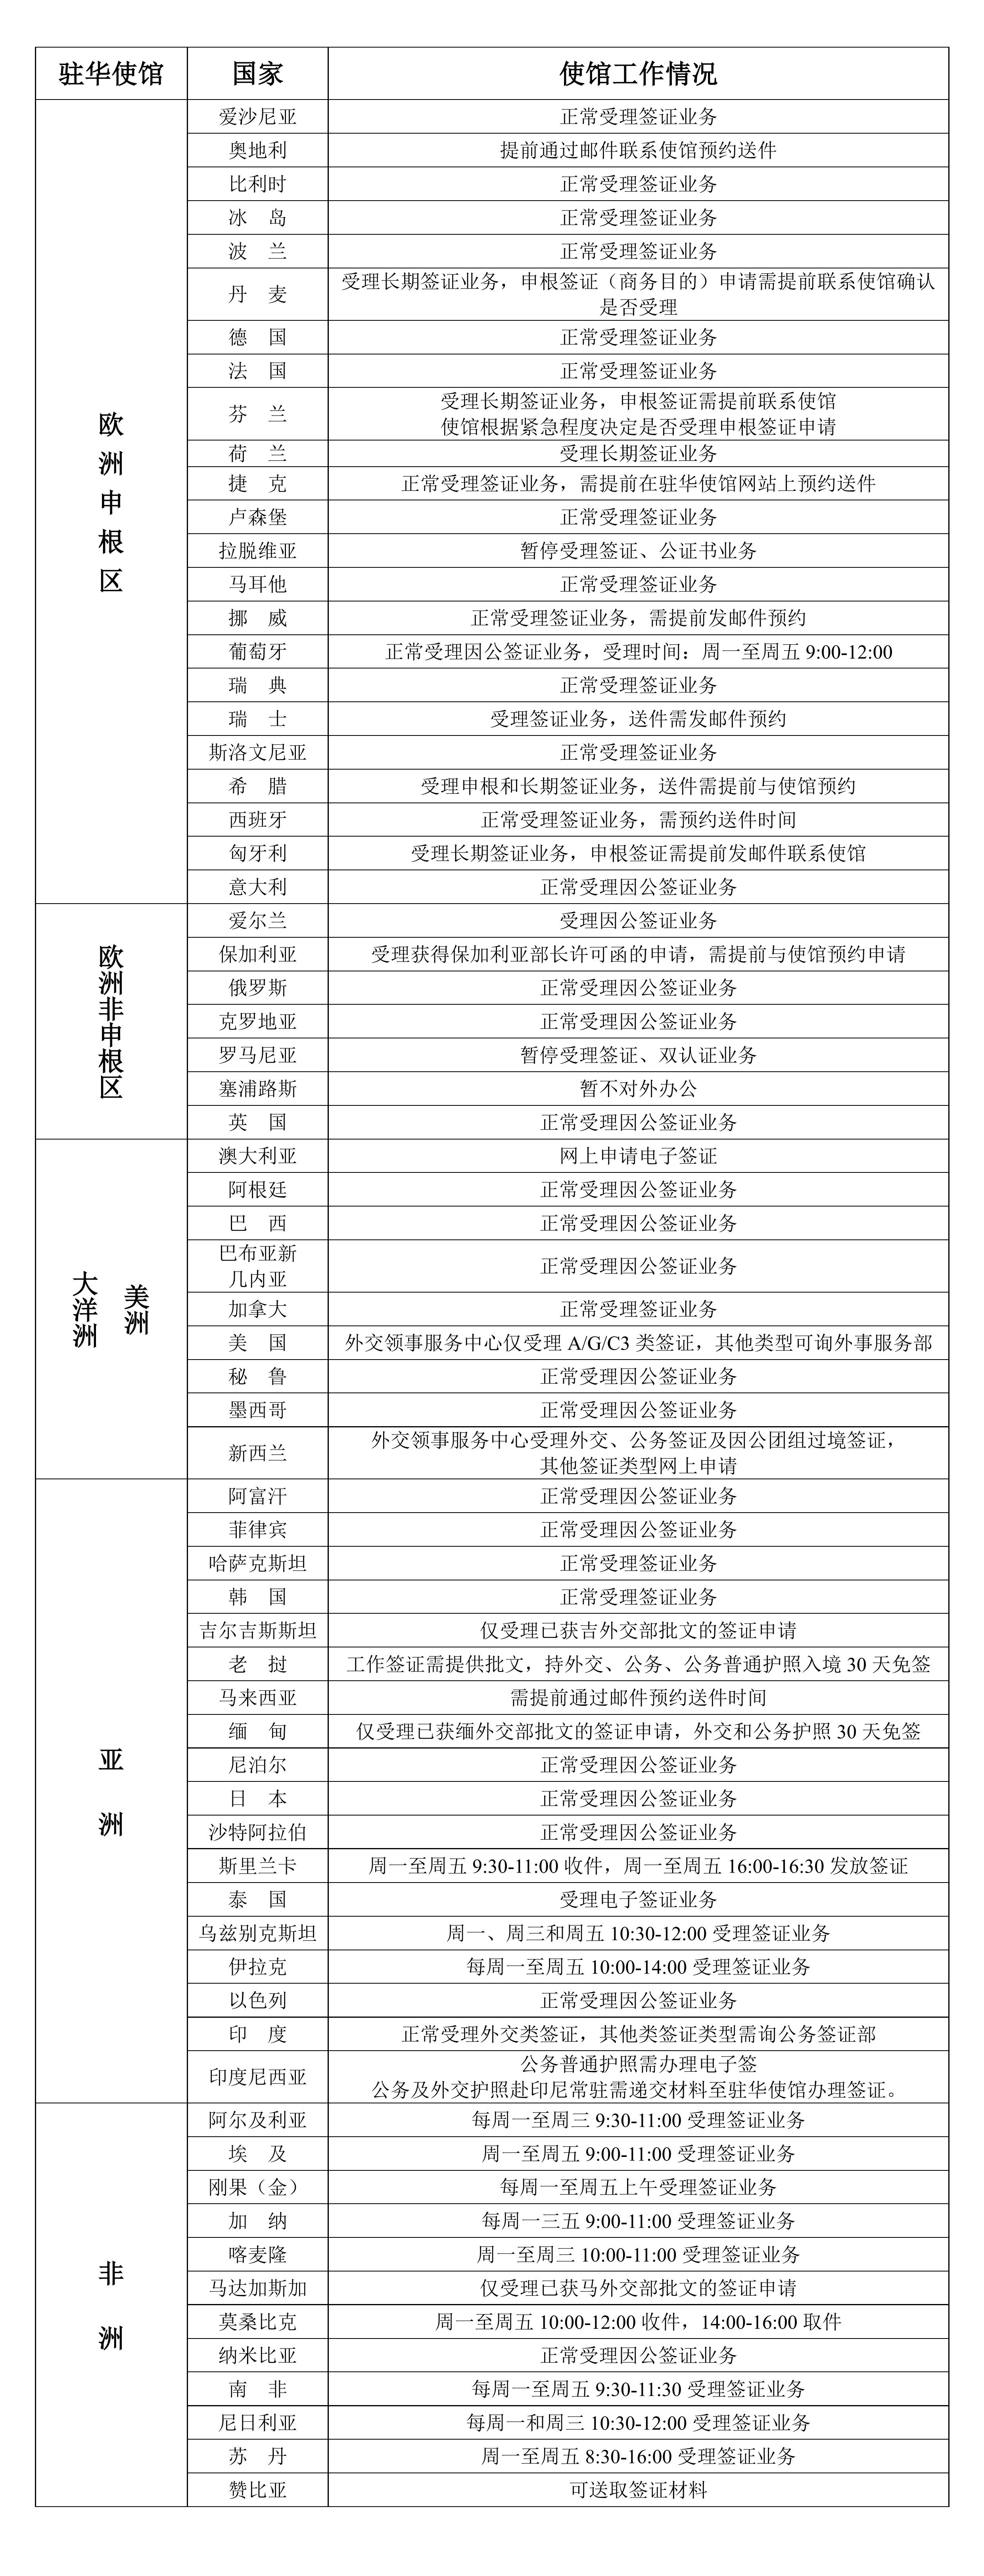 2023年1月10日部分驻华使馆工作情况统计表_00.jpg